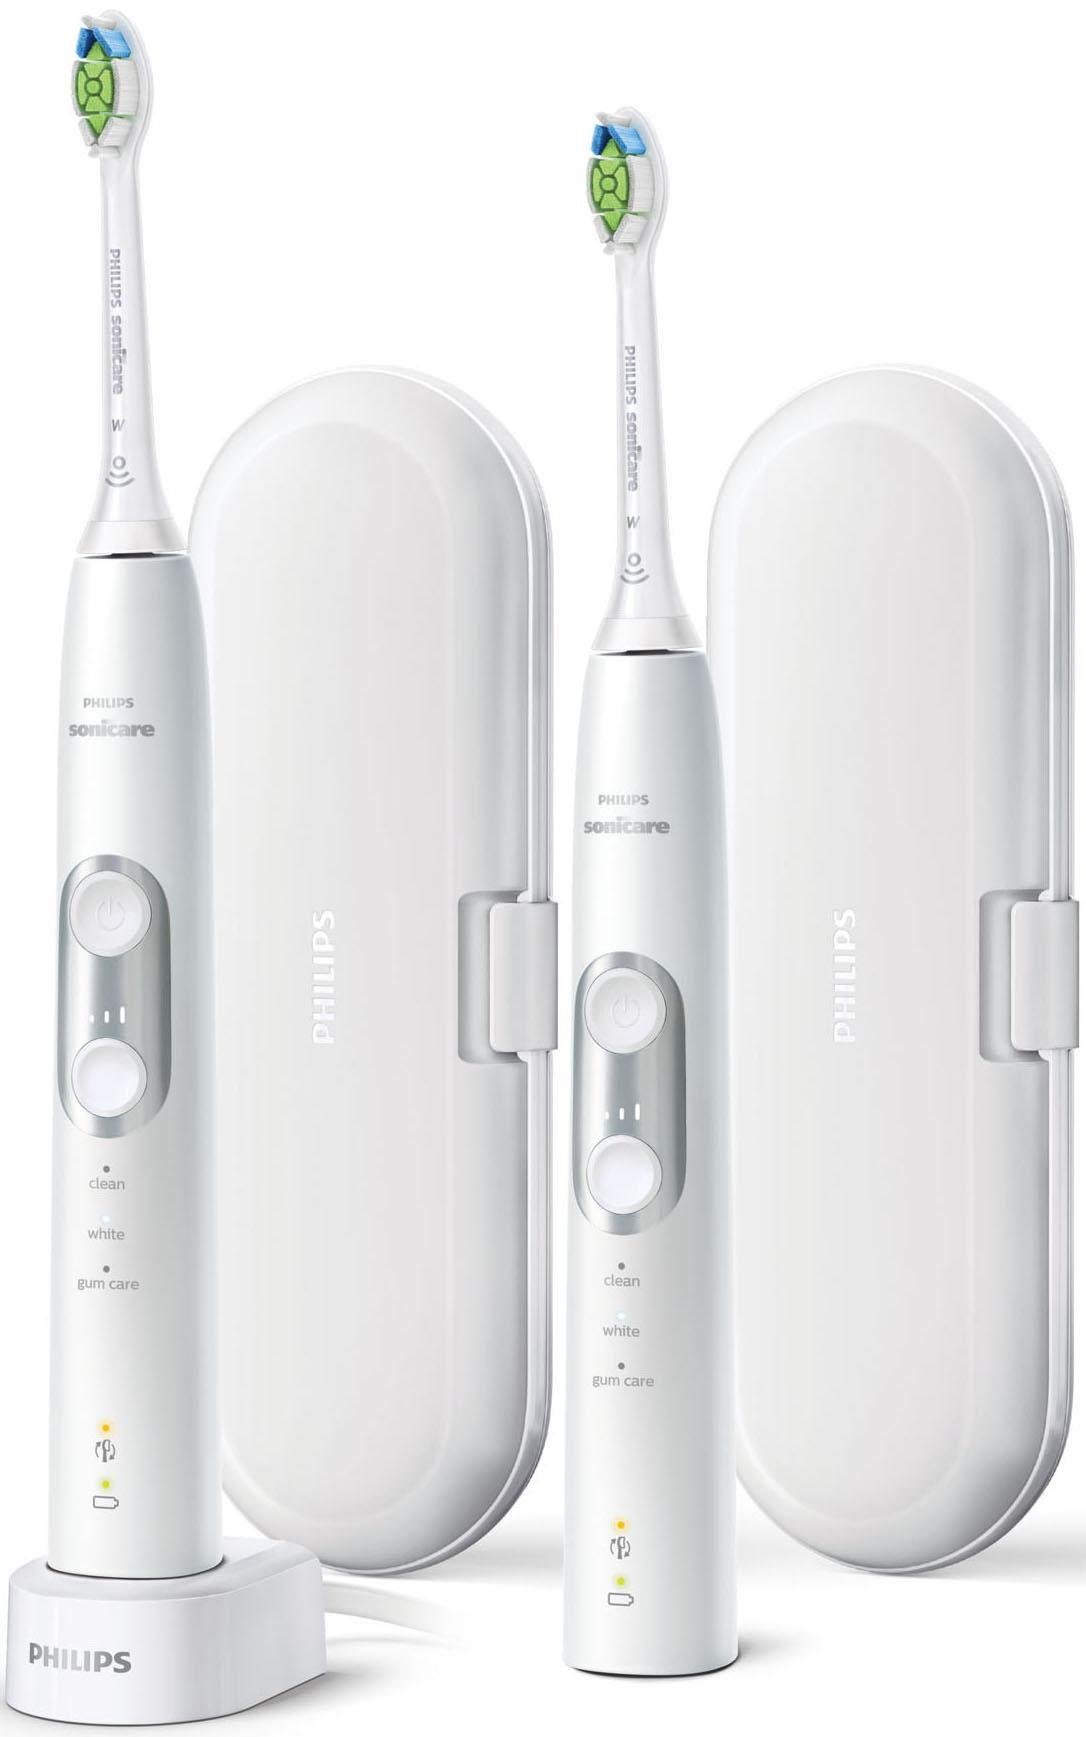 Philips Sonicare Elektrische tandenborstel HX6877/34 ProtectiveClean 6100 ultrasone tandenborstel, set van 2 met 3 poetsprogramma's inclusief reistasje & makkelijk gekocht | OTTO